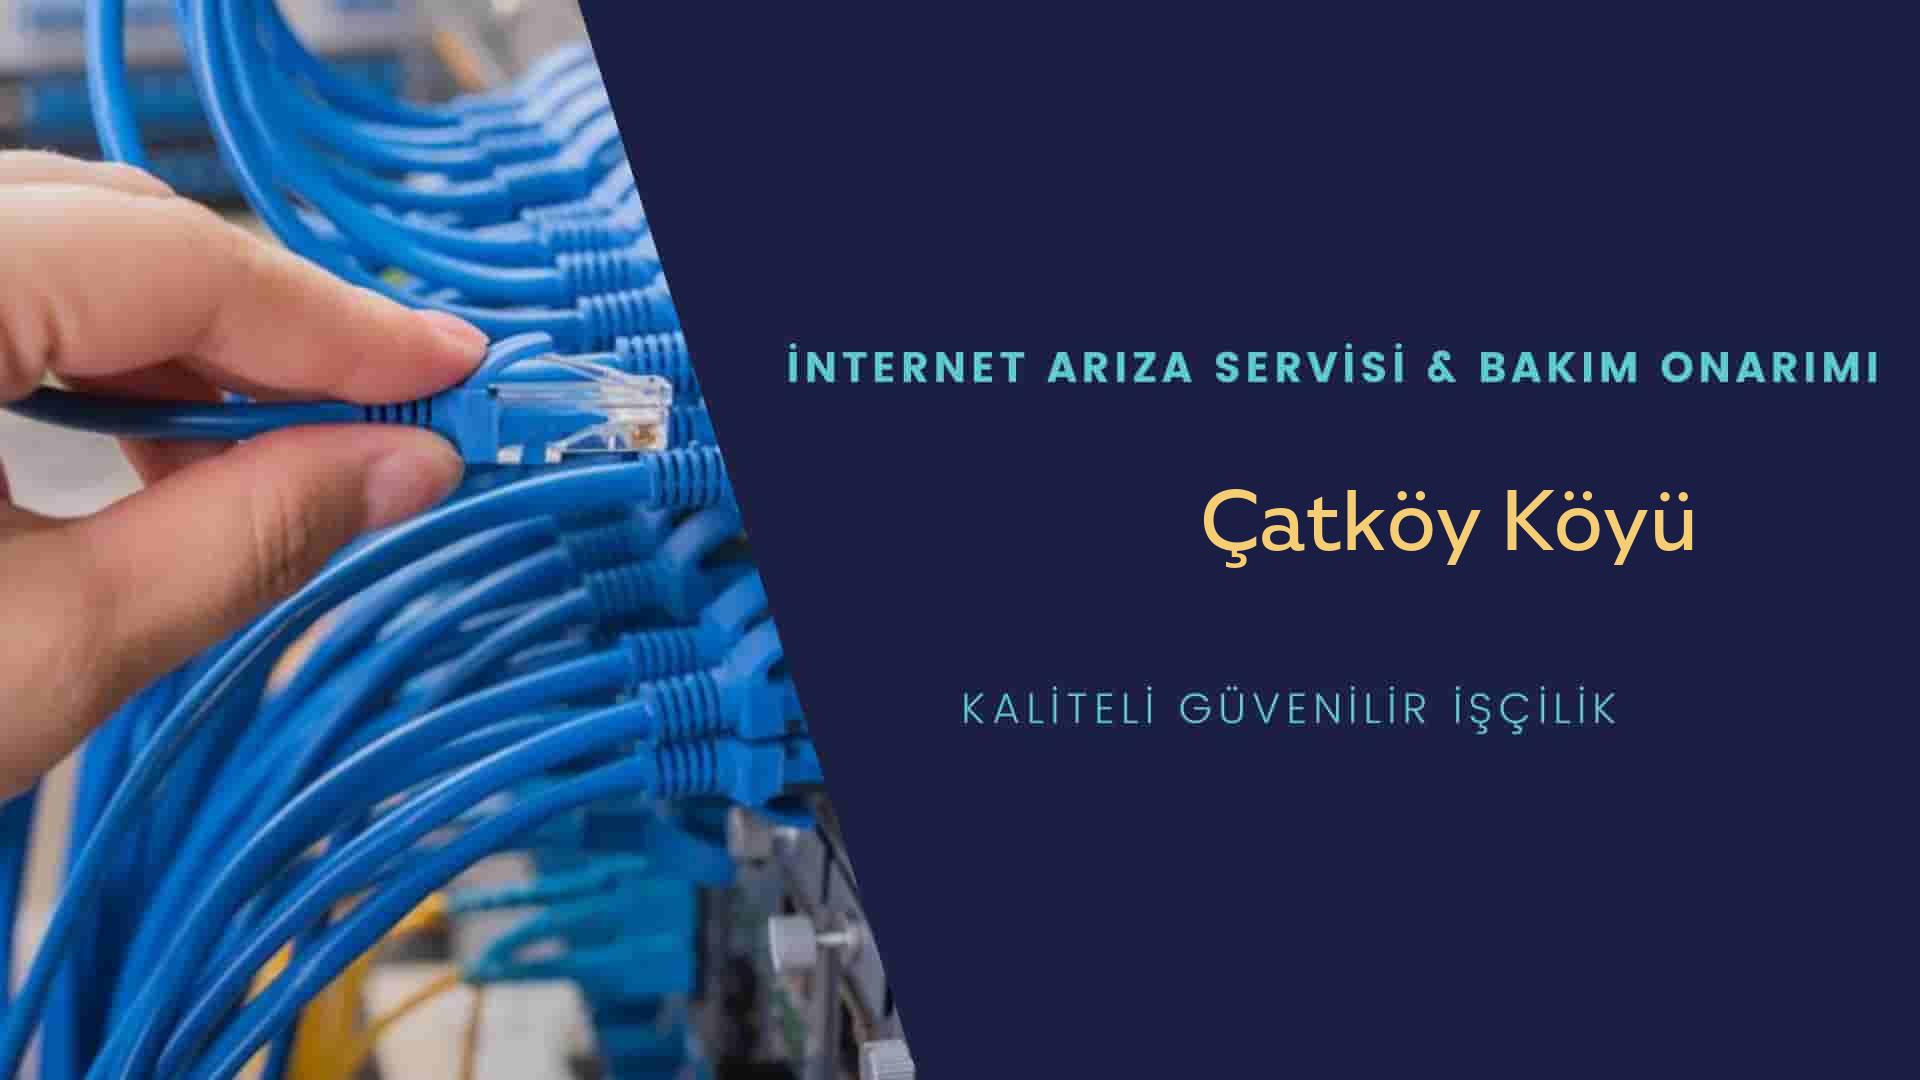 Çatköy Köyü internet kablosu çekimi yapan yerler veya elektrikçiler mi? arıyorsunuz doğru yerdesiniz o zaman sizlere 7/24 yardımcı olacak profesyonel ustalarımız bir telefon kadar yakındır size.